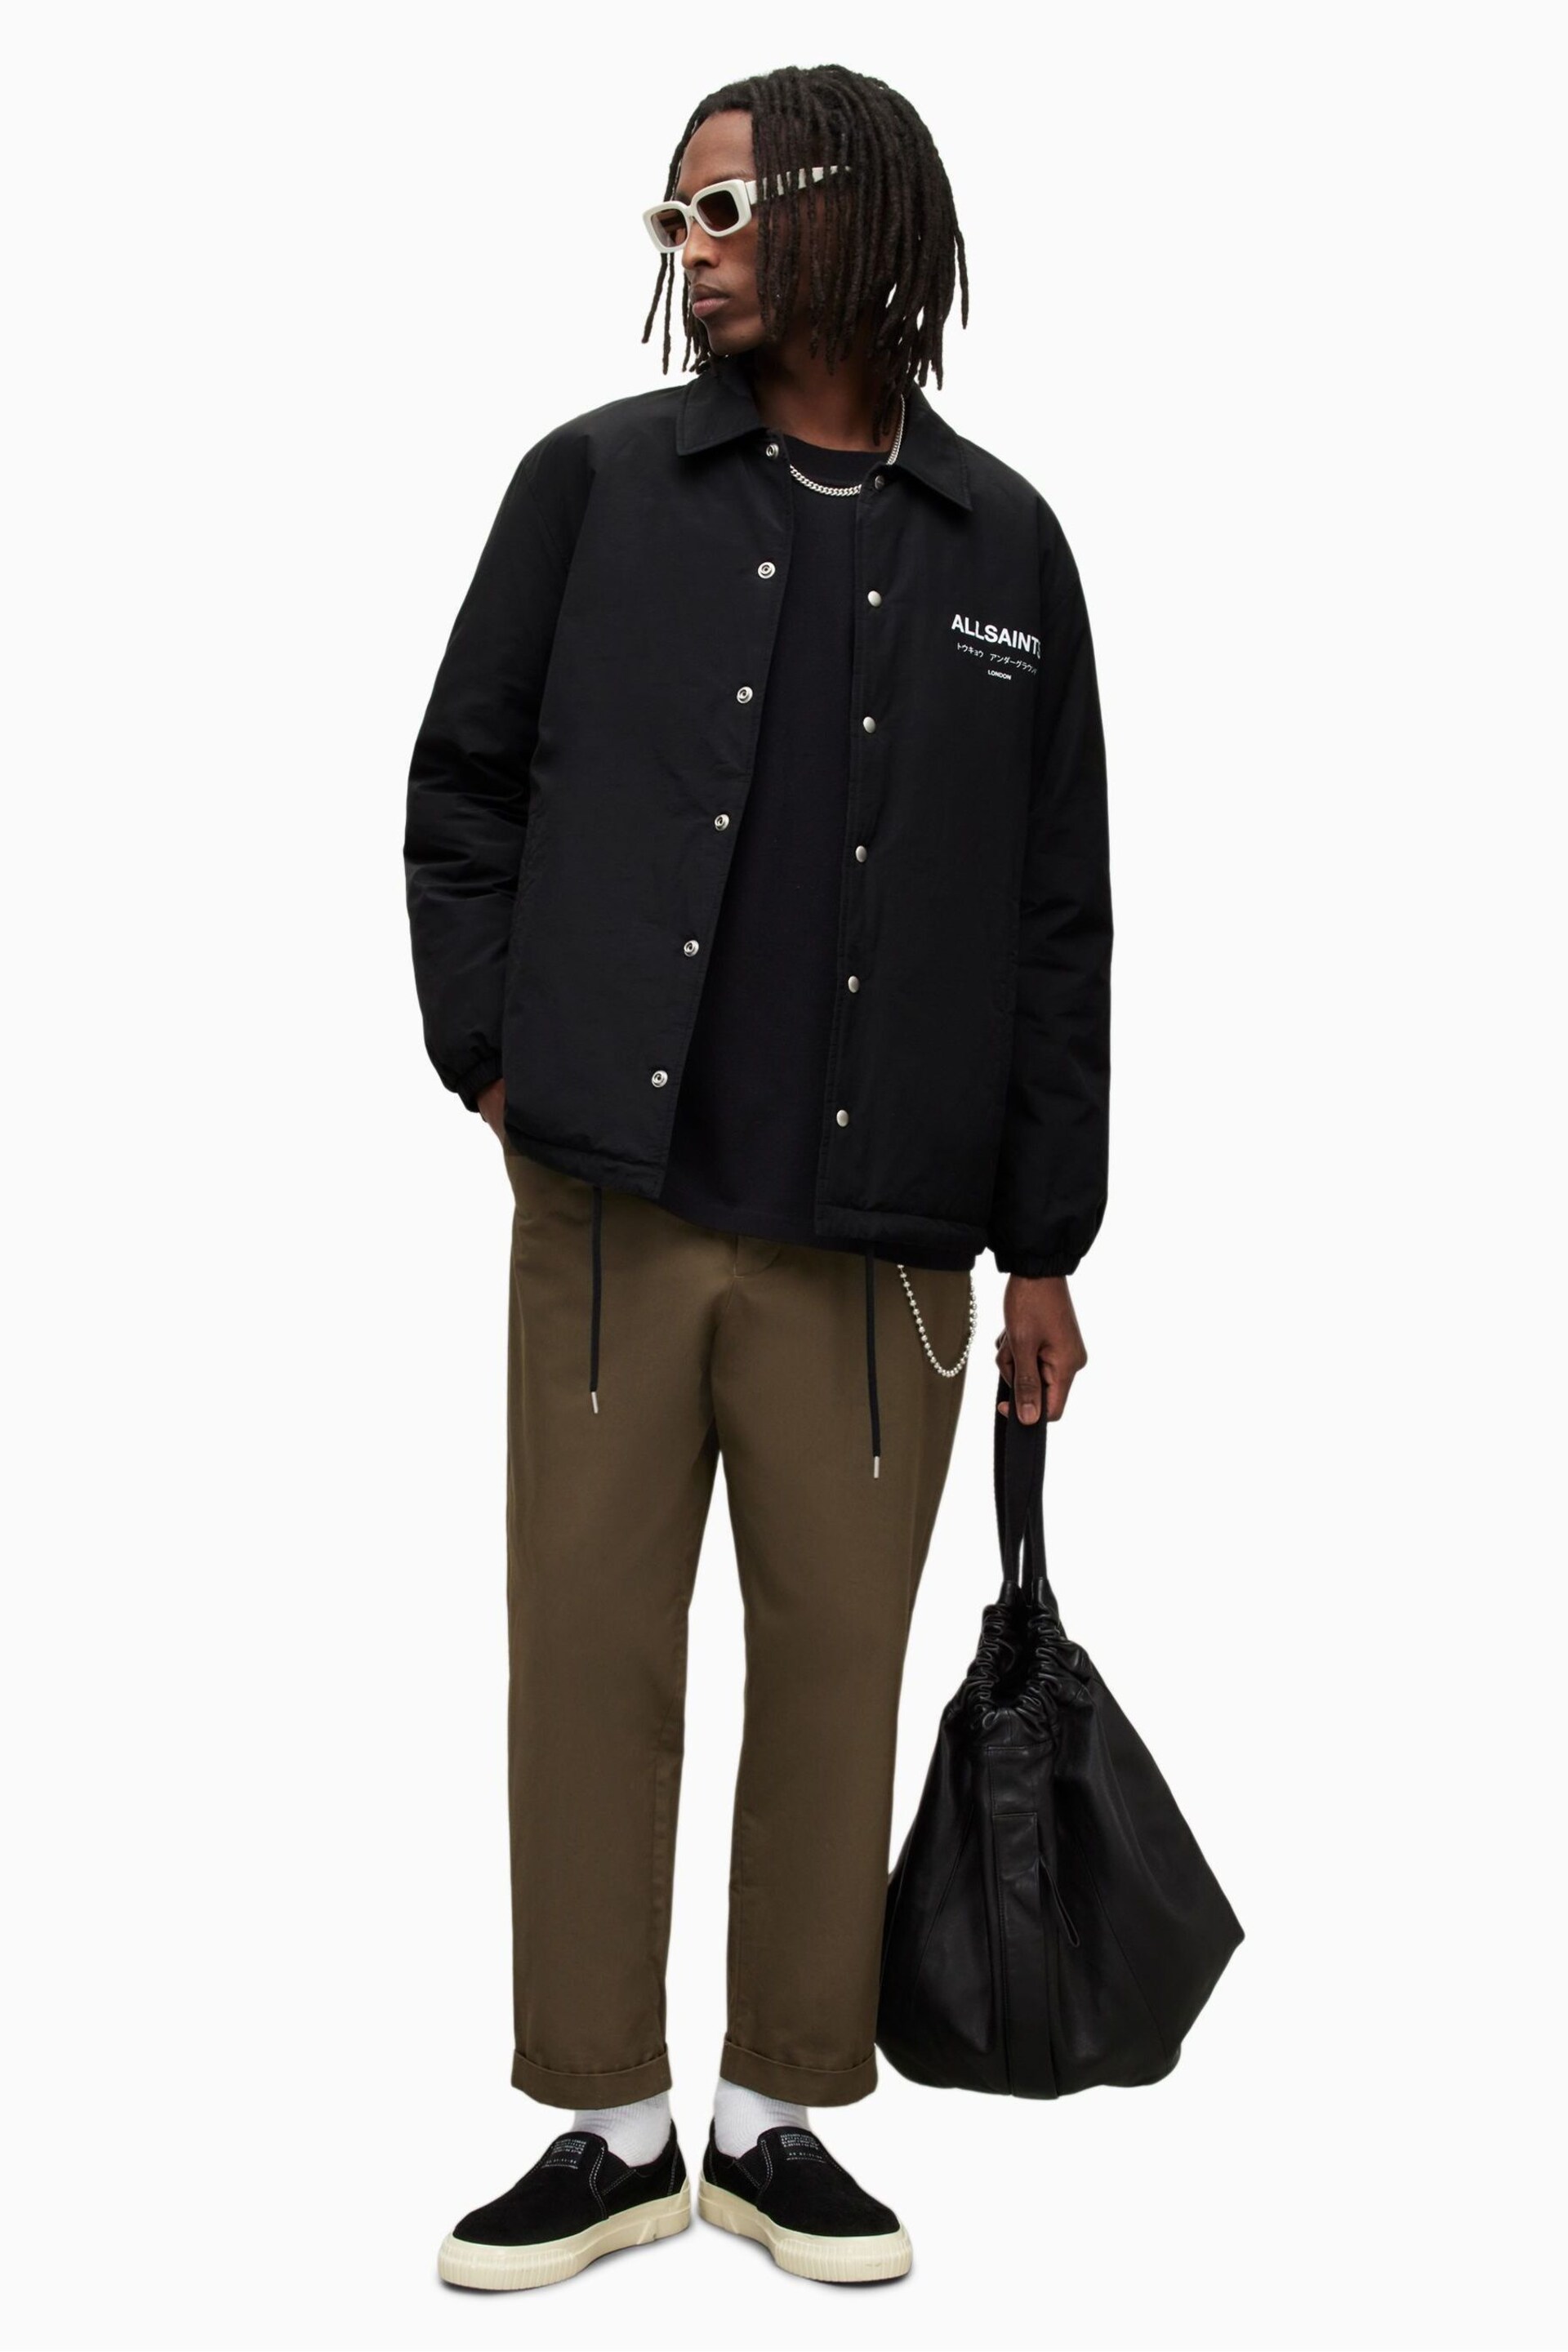 AllSaints Black Underground Coach Jacket - Image 1 of 9